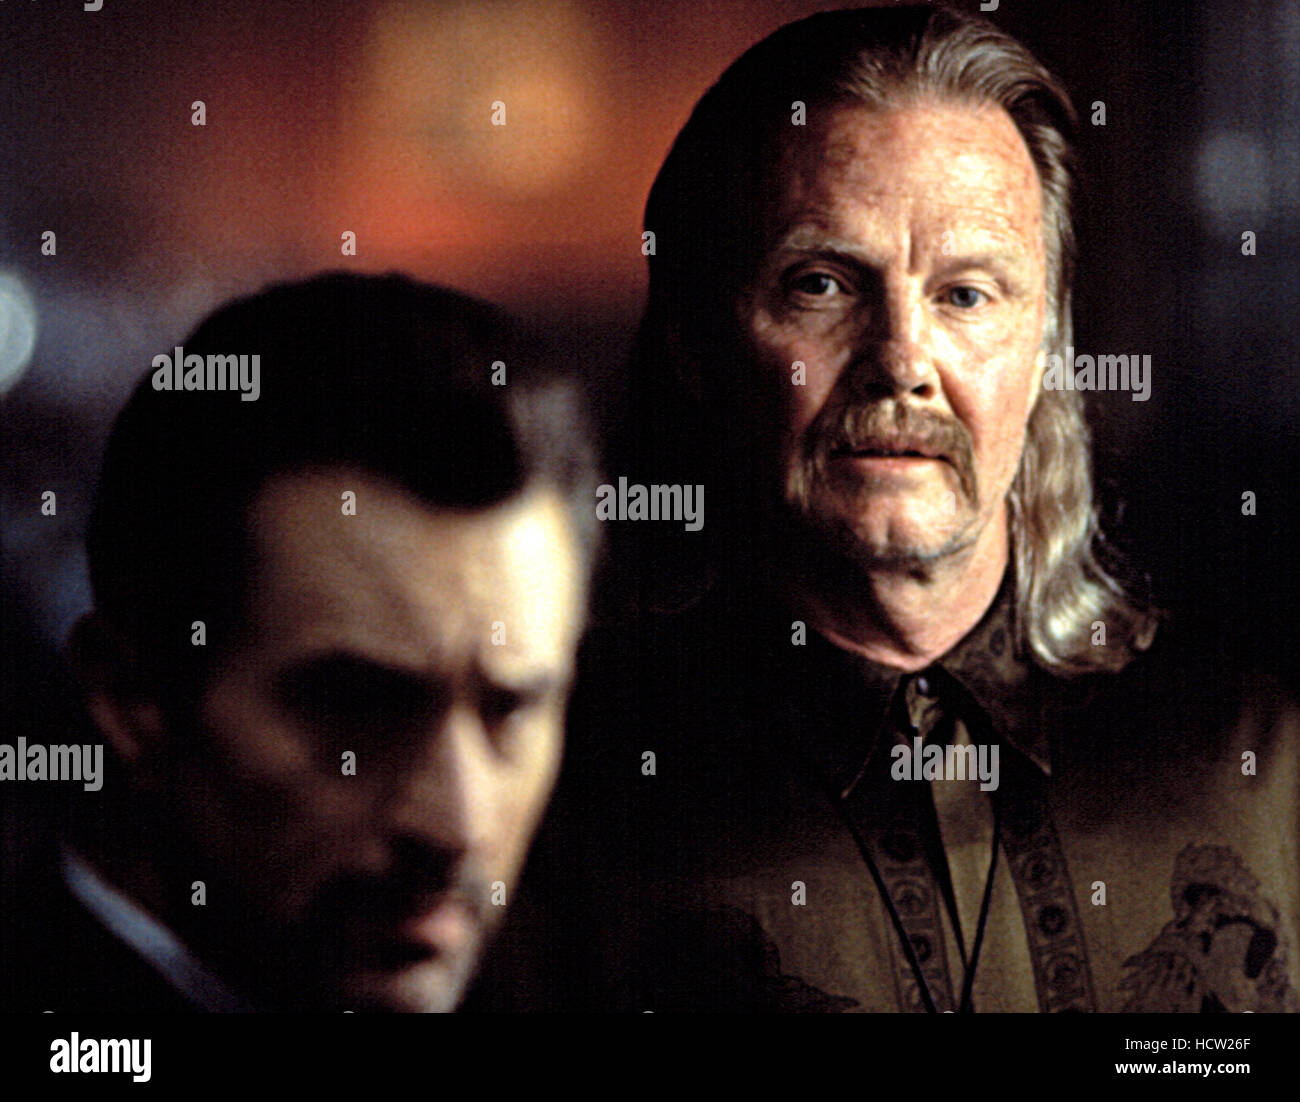 HEAT, Robert De Niro, Jon Voight, 1995 Stock Photo